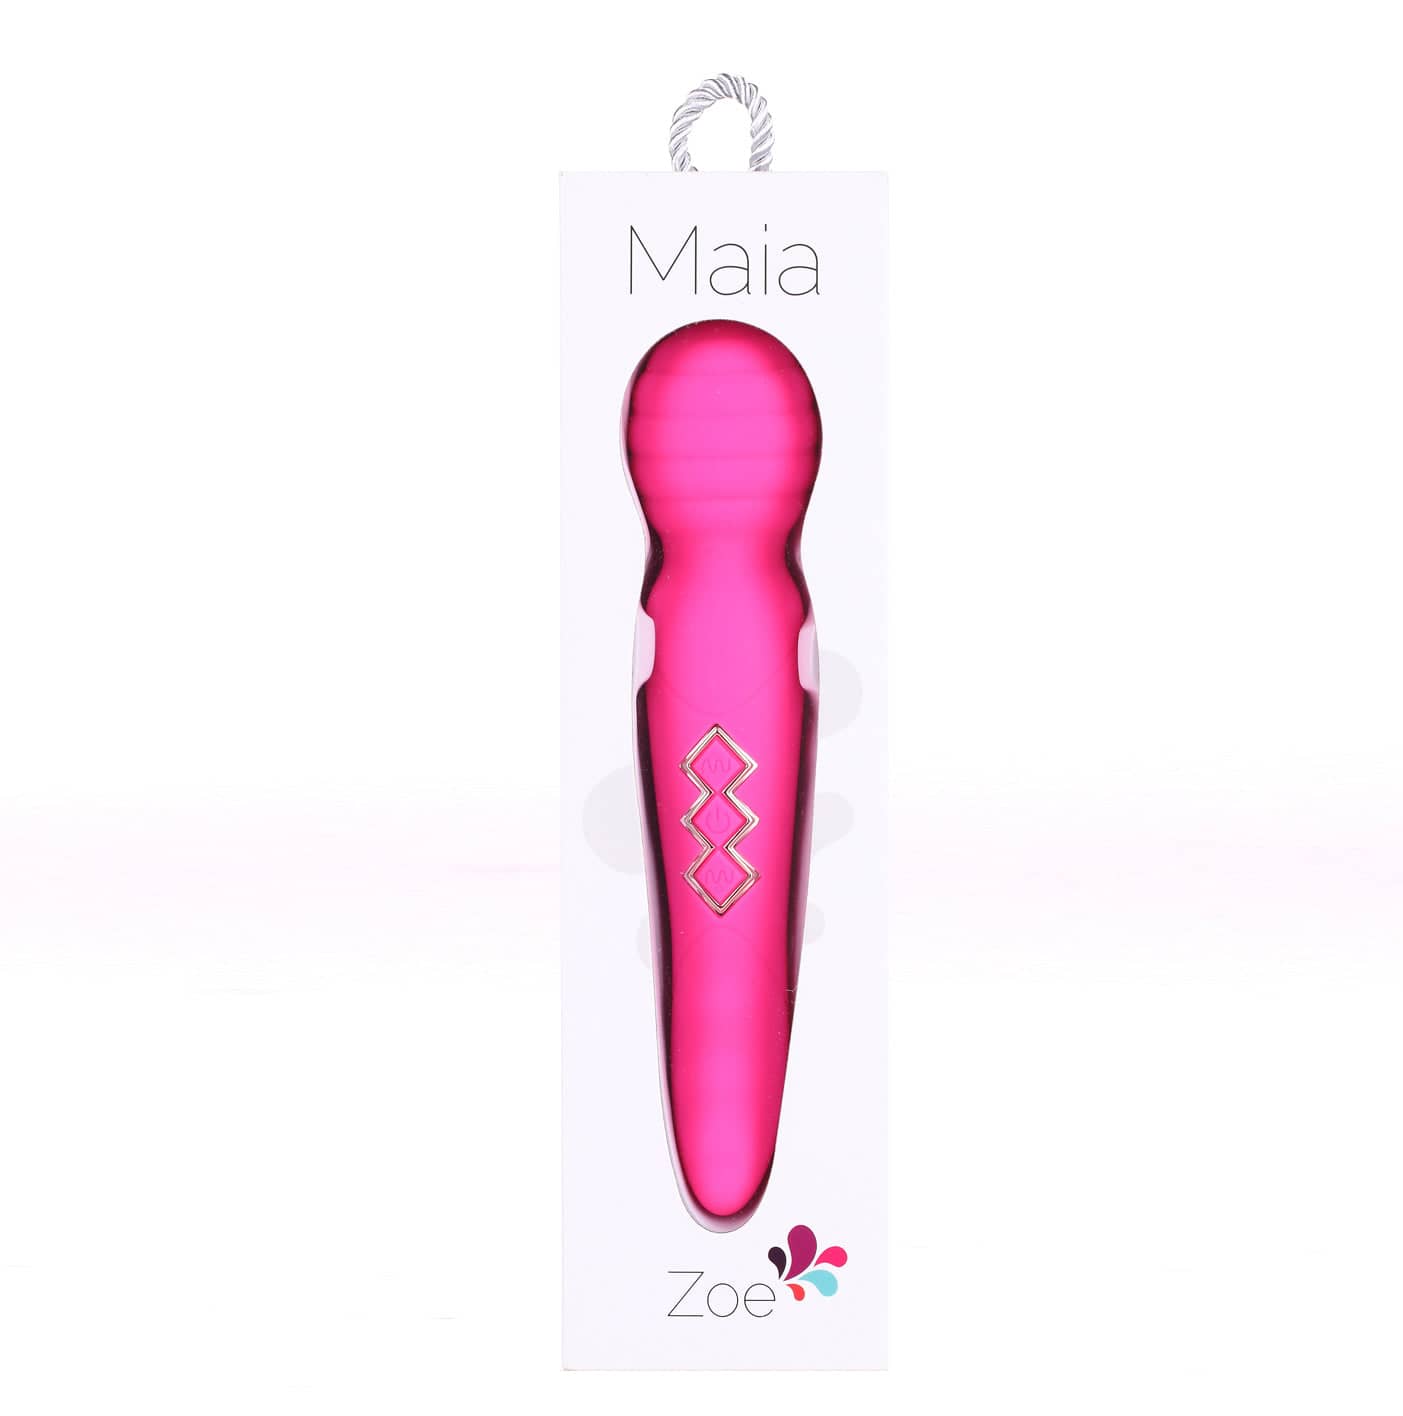 internal vaginal vibrator, pink vaginal vibrator